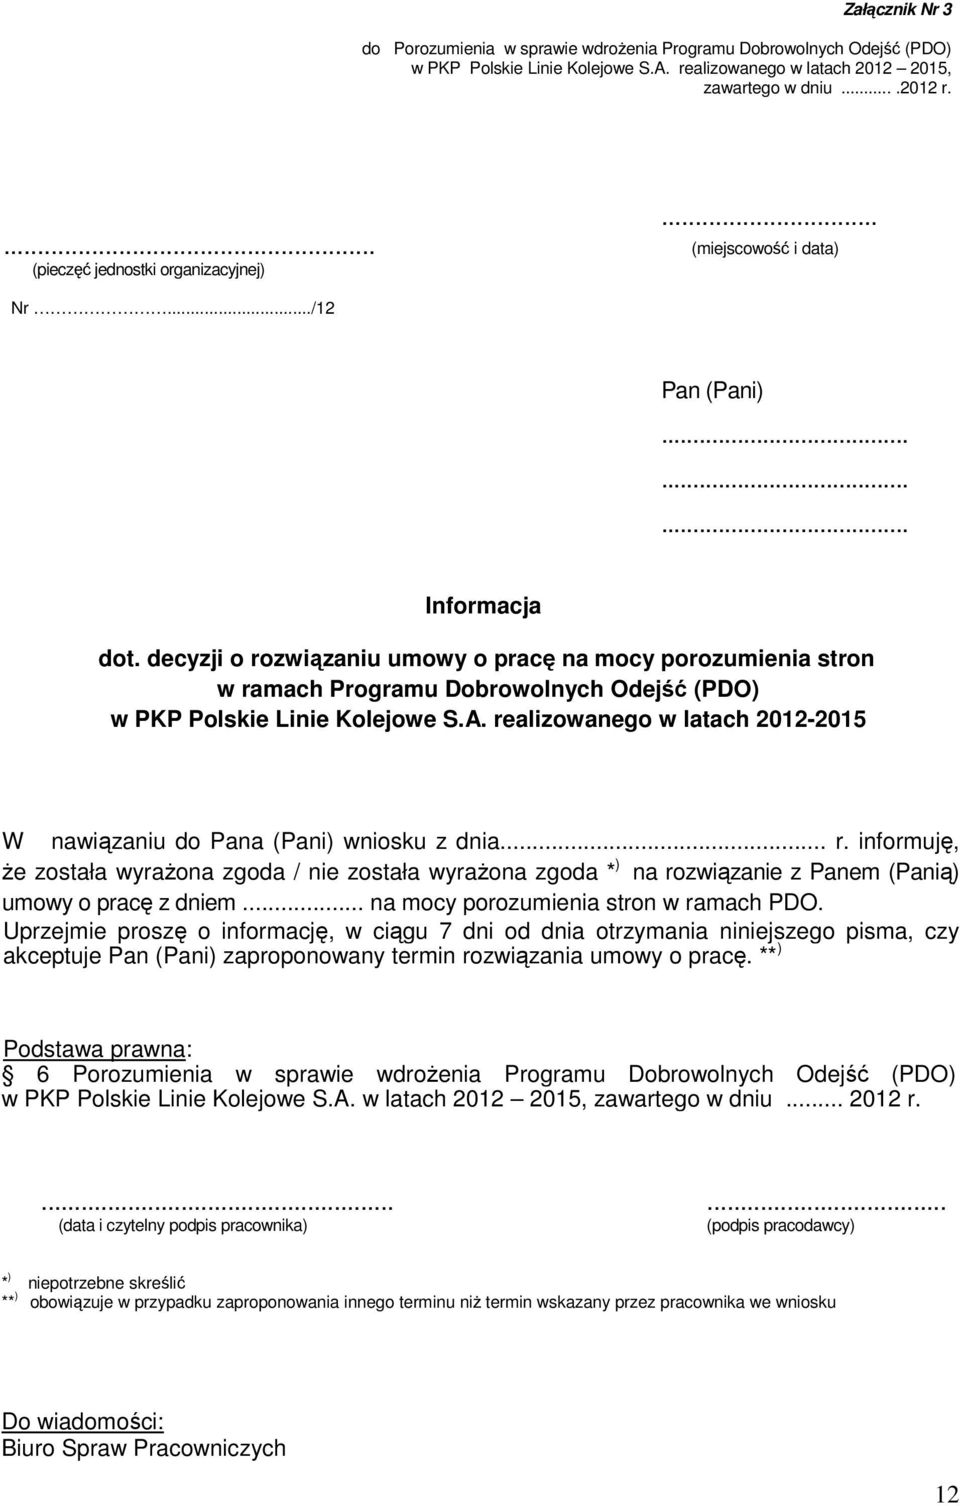 decyzji o rozwiązaniu umowy o pracę na mocy porozumienia stron w ramach Programu Dobrowolnych Odejść (PDO) w PKP Polskie Linie Kolejowe S.A.